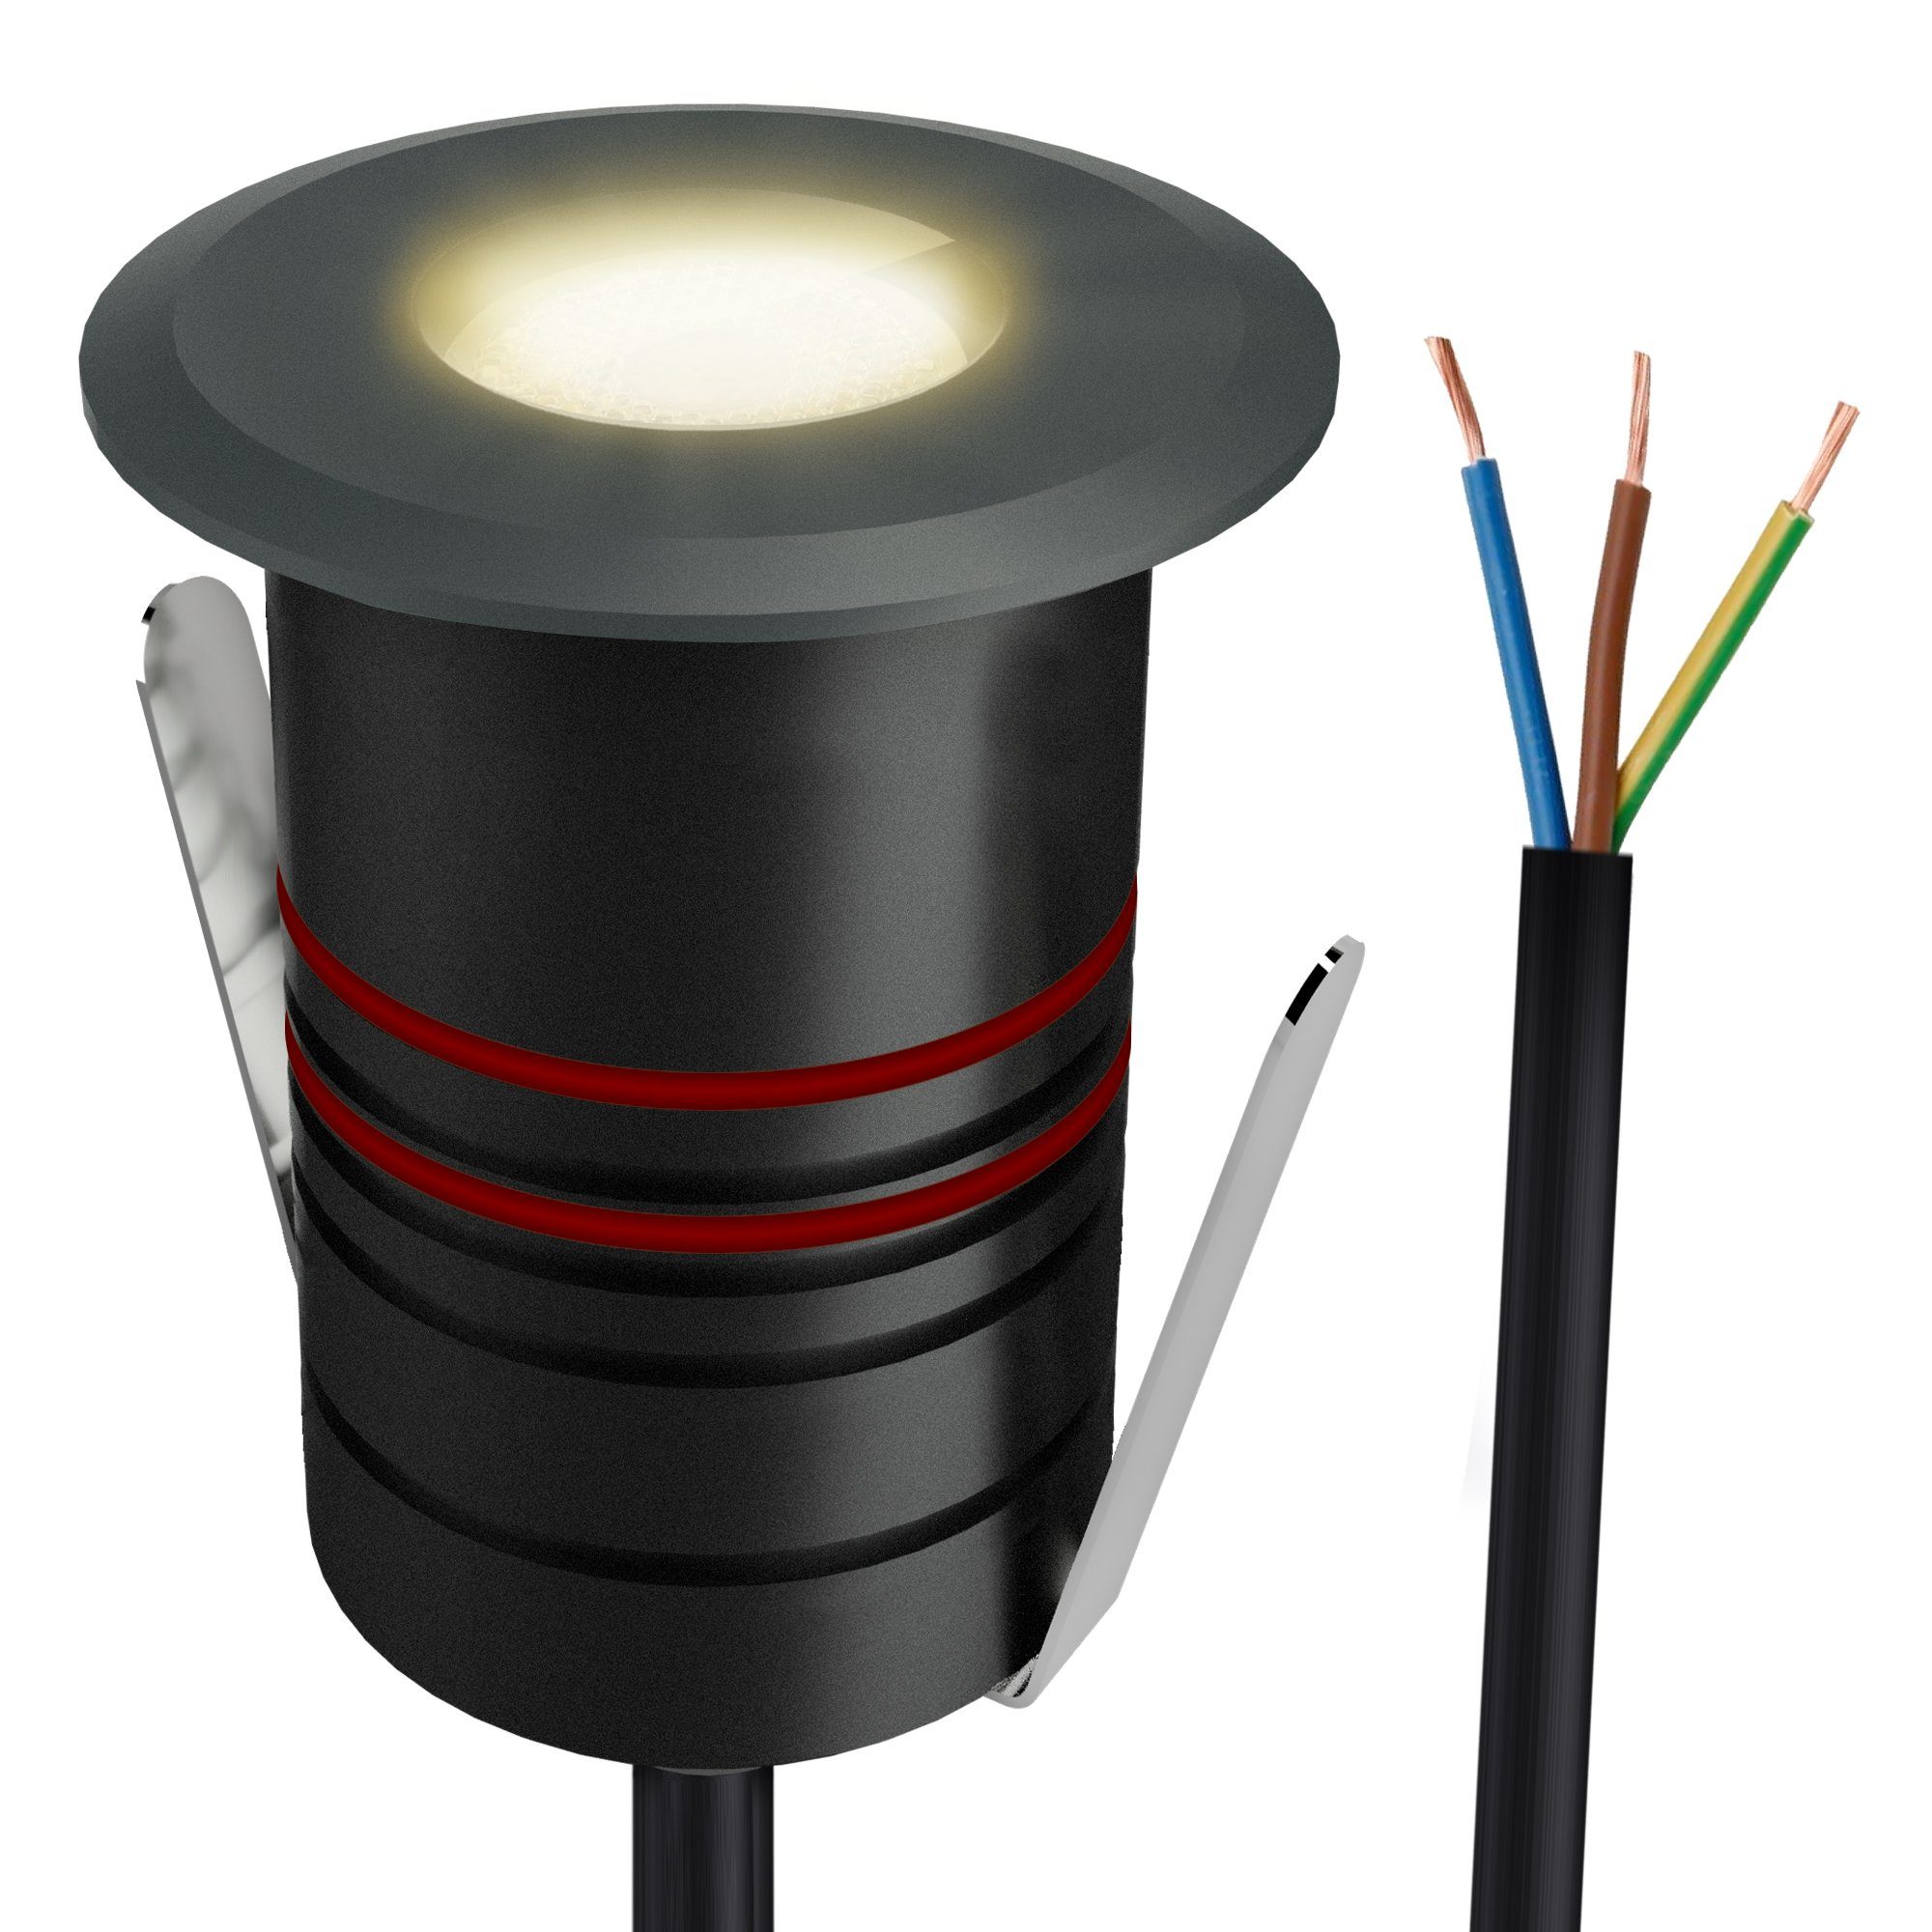 SSC-LUXon 230V JAVO anthrazit LED Warmweiß Mini Gartenstrahler Bodenstrahler LED warmweiß, IP67 für Außen